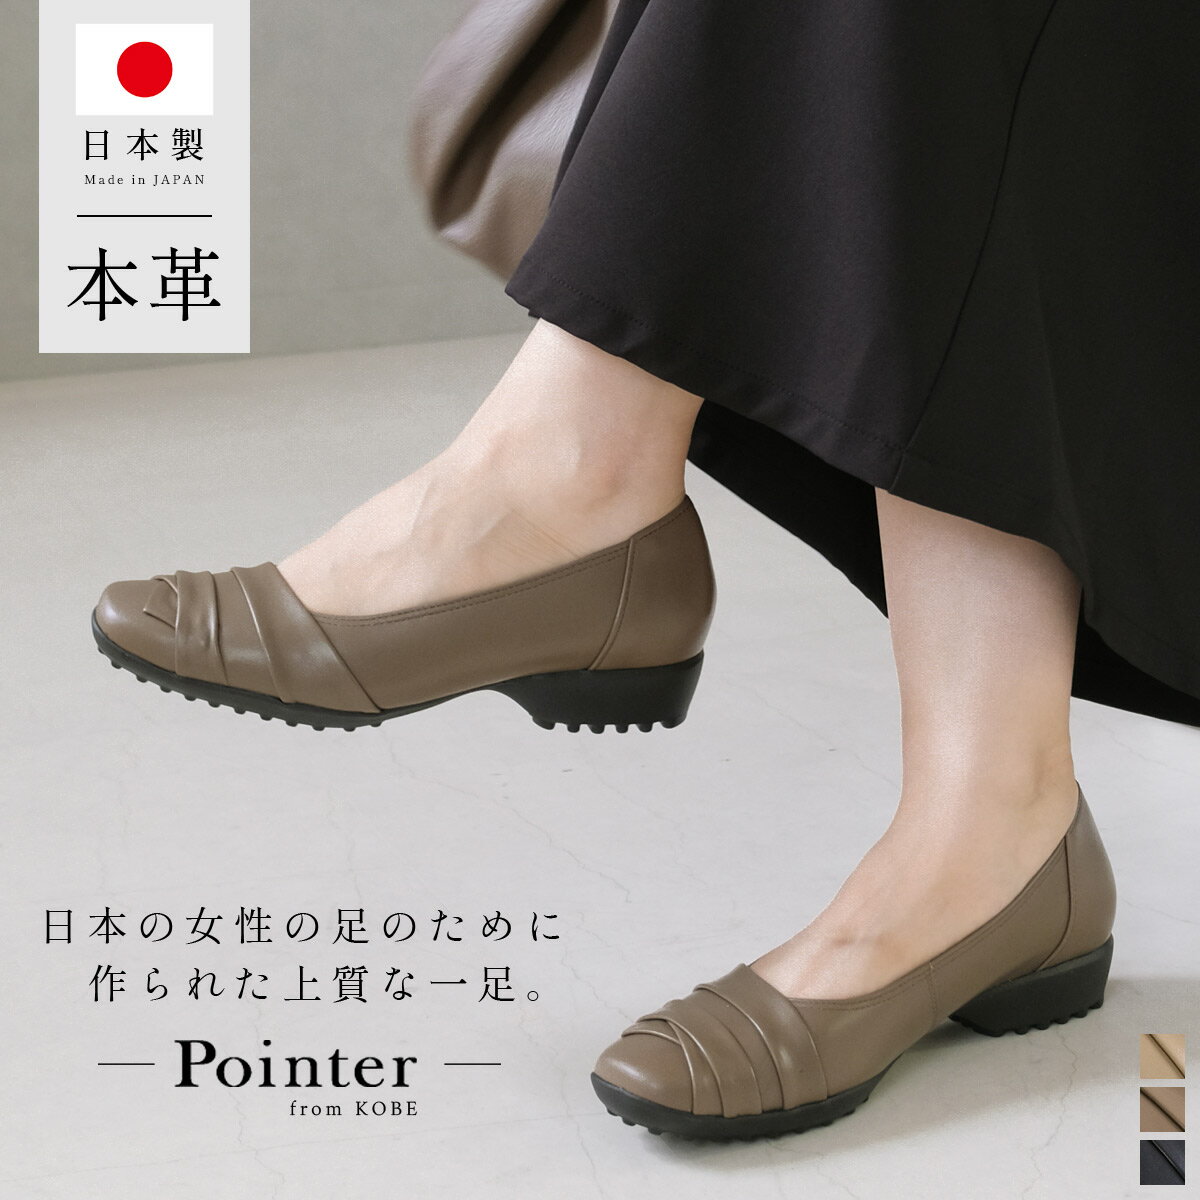 キーワード：日本製 軽量 軽い 快適 クッション ブラック 黒日本の職人の技術が詰まった牛革パンプス。エレガントかつ流行に左右されないデザイン底の凹凸が地面をしっかりと捉え、柔らかく軽量。立体カップインソールでクッション性も抜群です。毎日つい履きたくなる快適さをぜひ体験してみてください。 ■&nbsp;商品詳細 靴タイプ 対応サイズ 採寸方法について詳しくはコチラ 【22.0cm】【22.5cm】【23.0cm】【23.5cm】【24.0cm】【24.5cm】【25.0cm】 アイテムスペック サイズ 甲幅 底幅 22.0cm 13.5 6.8 22.5cm 13.5 7.0 23.0cm 13.8 7.2 23.5cm 14.0 7.3 24.0cm 14.2 7.5 24.5cm 14.5 7..6 25.0cm 15.0 8.0 &#8727;単位:cm ヒール高 ストーム高 3cm - 素材 片足重さ 革 約173g(計測サイズ：23.5cm) 機能性 立体カップインソール軽量 注意事項 入荷・製造時期によって色味が若干異なっていたり、同サイズでもサイズ感が異なる場合がございます。こちらの商品は自然の風合いを生かした天然素材を使用しております。素材特有の色ムラや傷、または接着部分からノリがはみ出ている場合がございますが不良ではございませんのでご理解ください。商品によっては染料および素材の性質上匂いが強いものもございます。より良い商品を販売できるよう検品の強化には努めさせて頂いておりますが、上記のような場合も御座いますので、ご理解下さいませ。